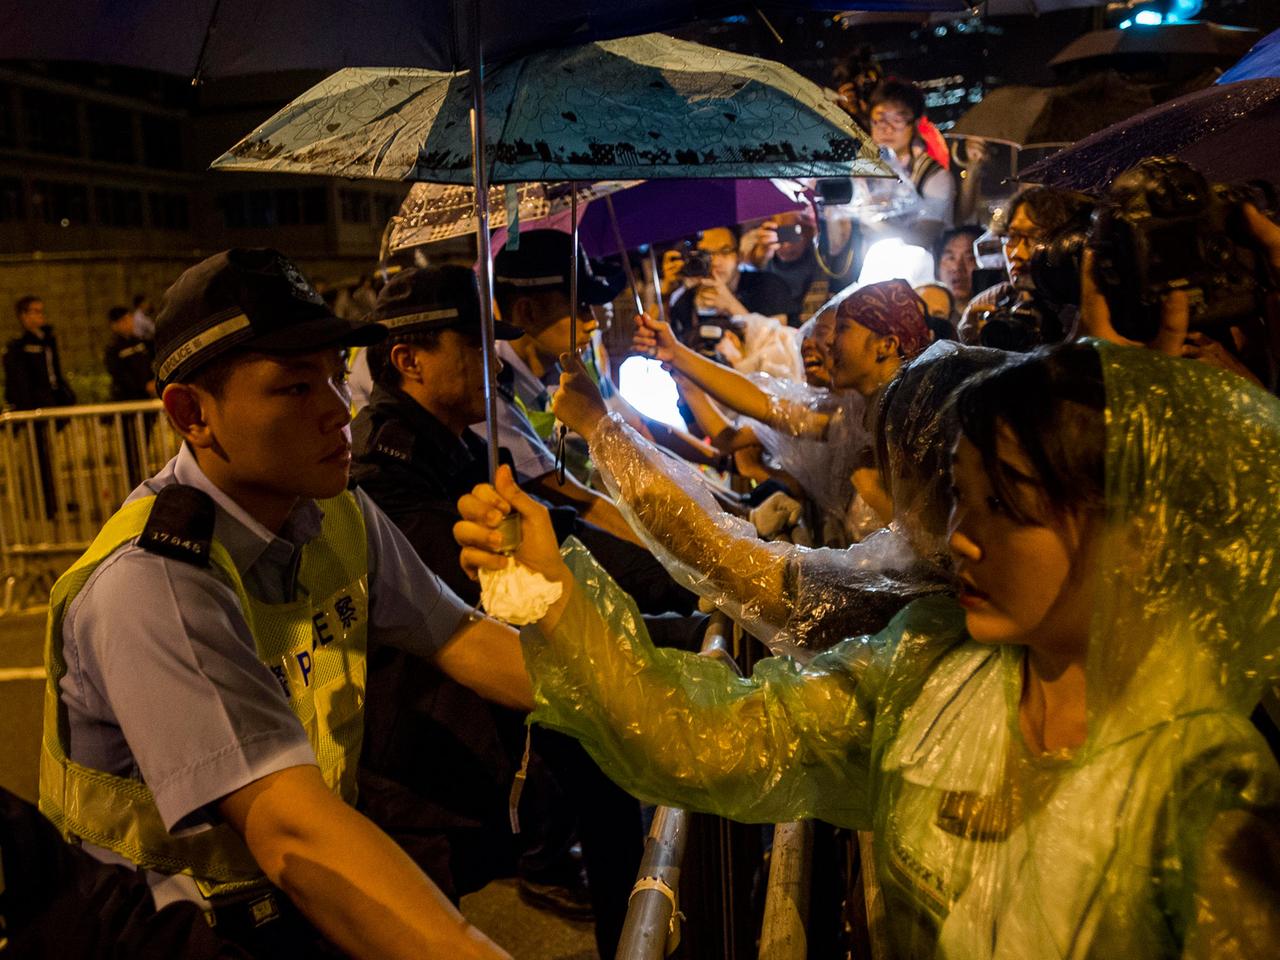 Teilnehmer der Demokratiebewegung in Hongkong demonstrieren im Regierungsviertel - sie verlangen den Rücktritt des Regierungschefs der chinesischen Sonderverwaltungszone.